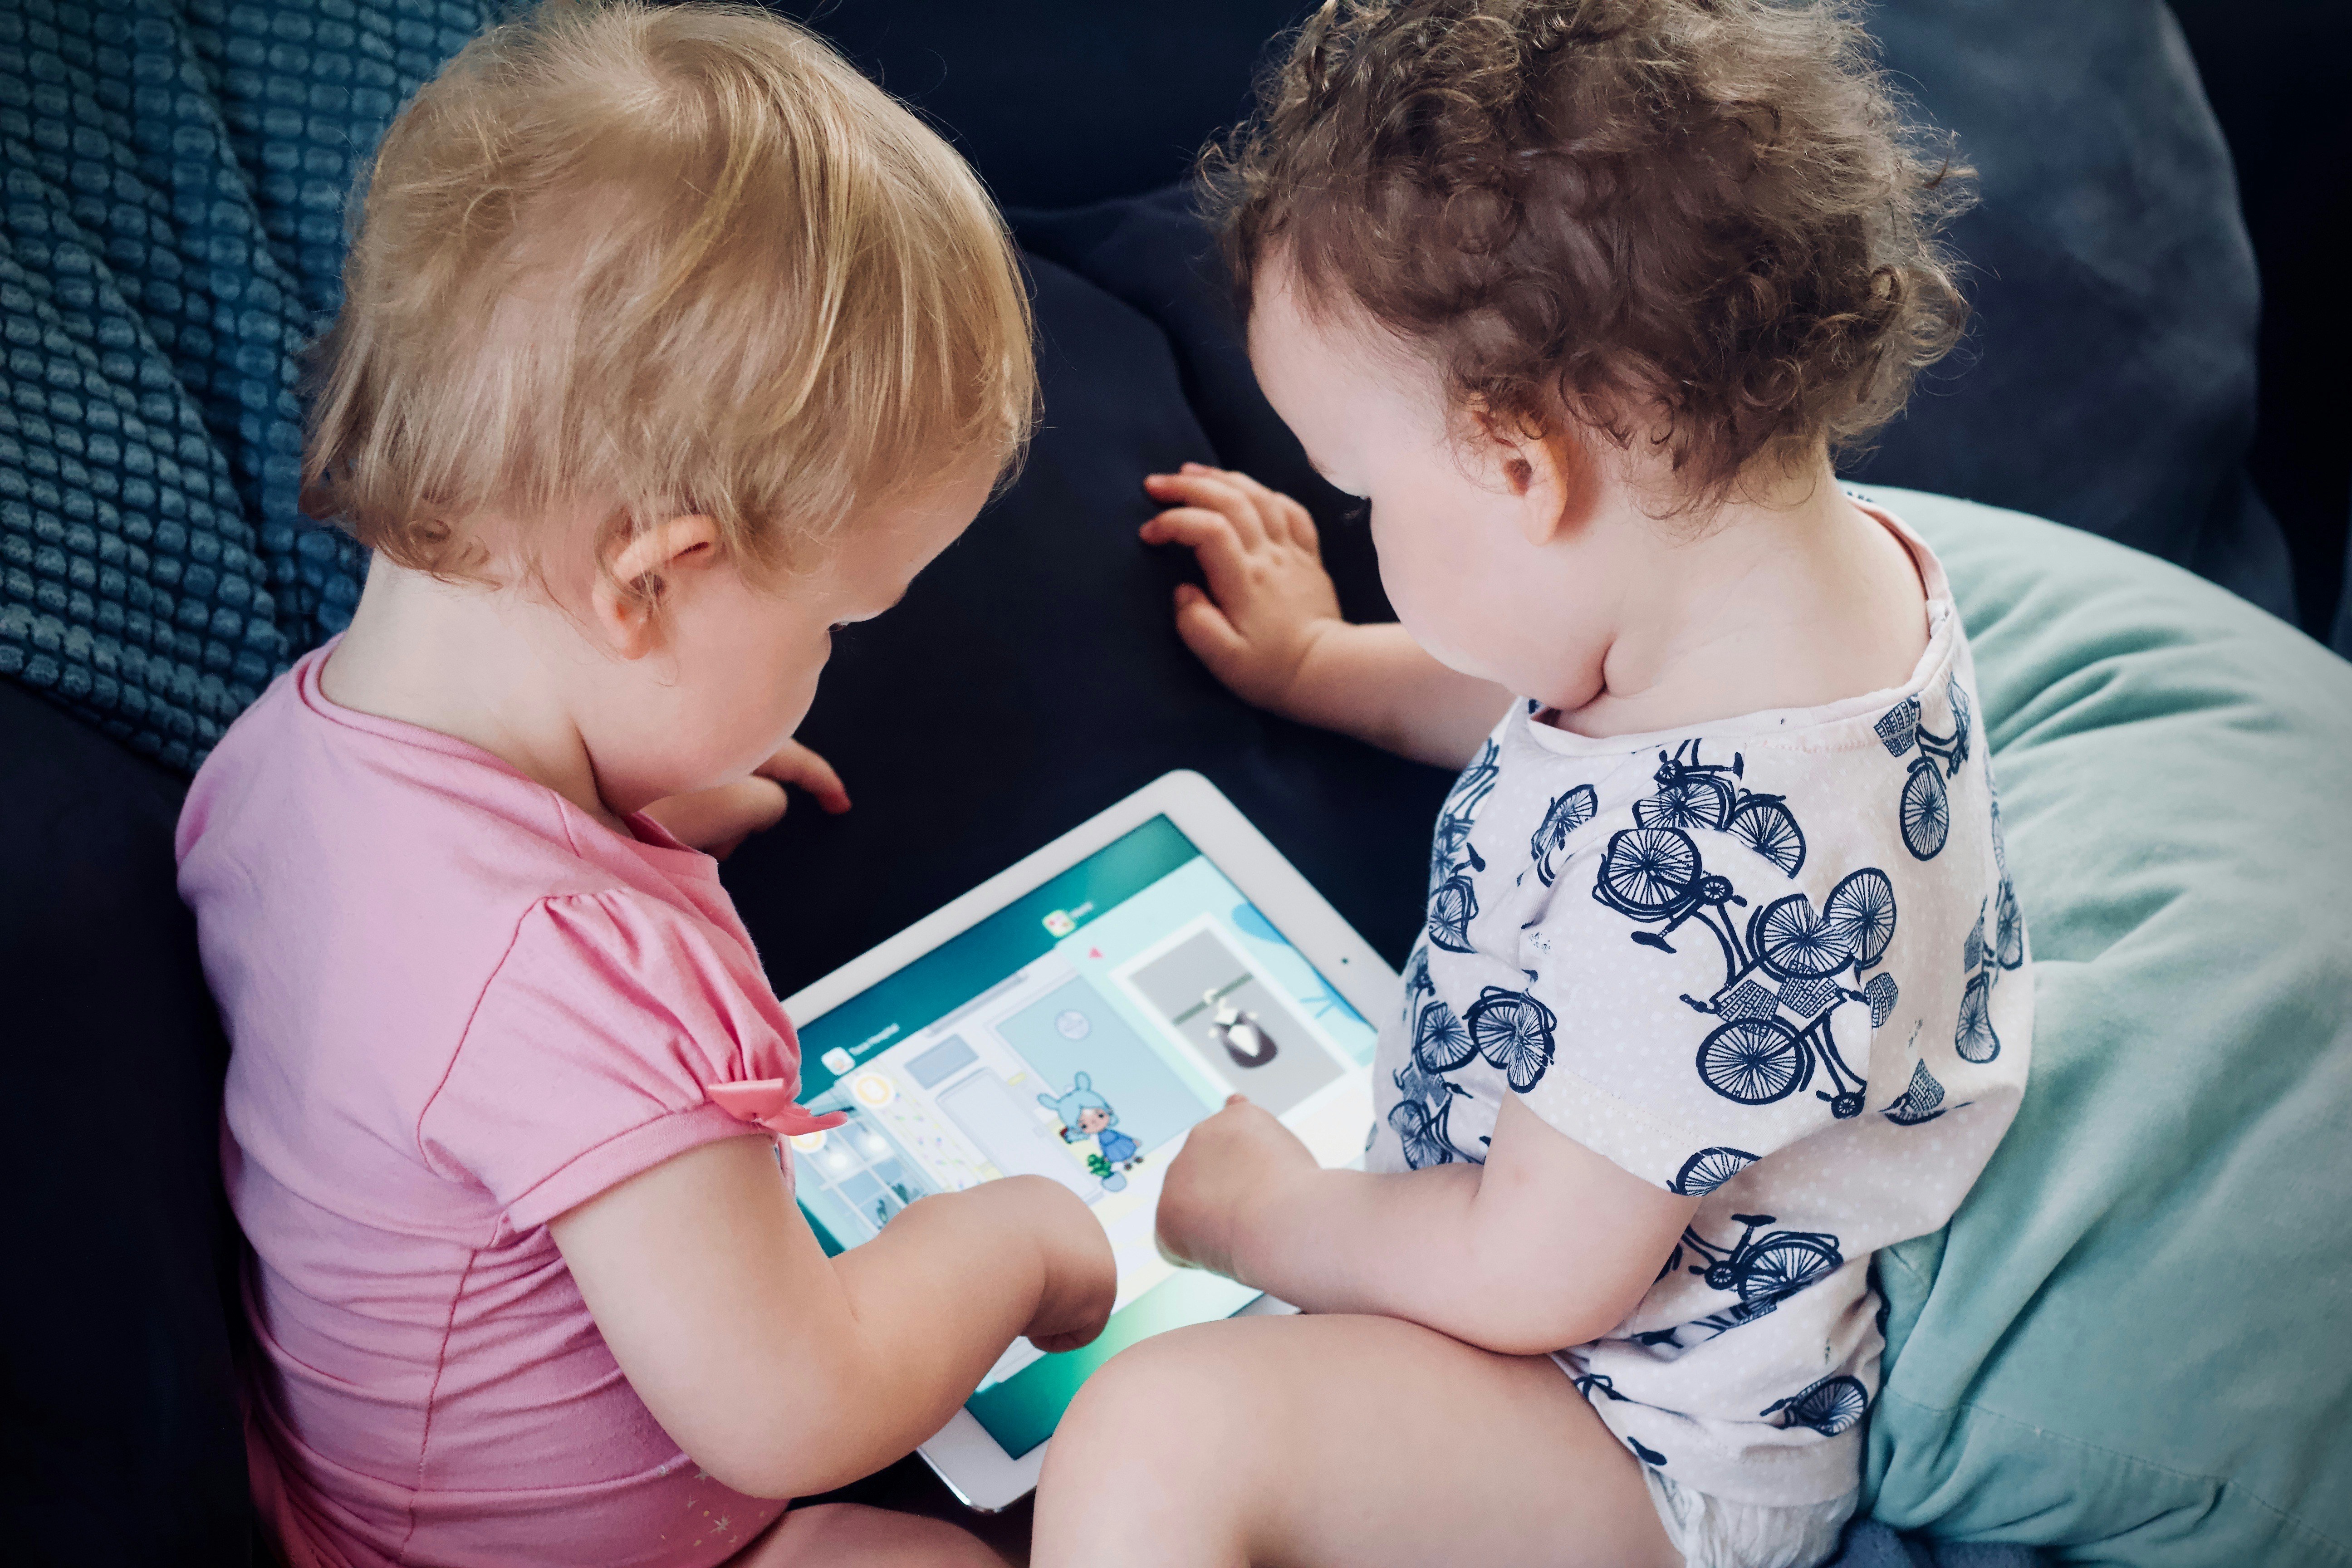 Deux enfants occupés sur leur tablette | Source : Unsplash